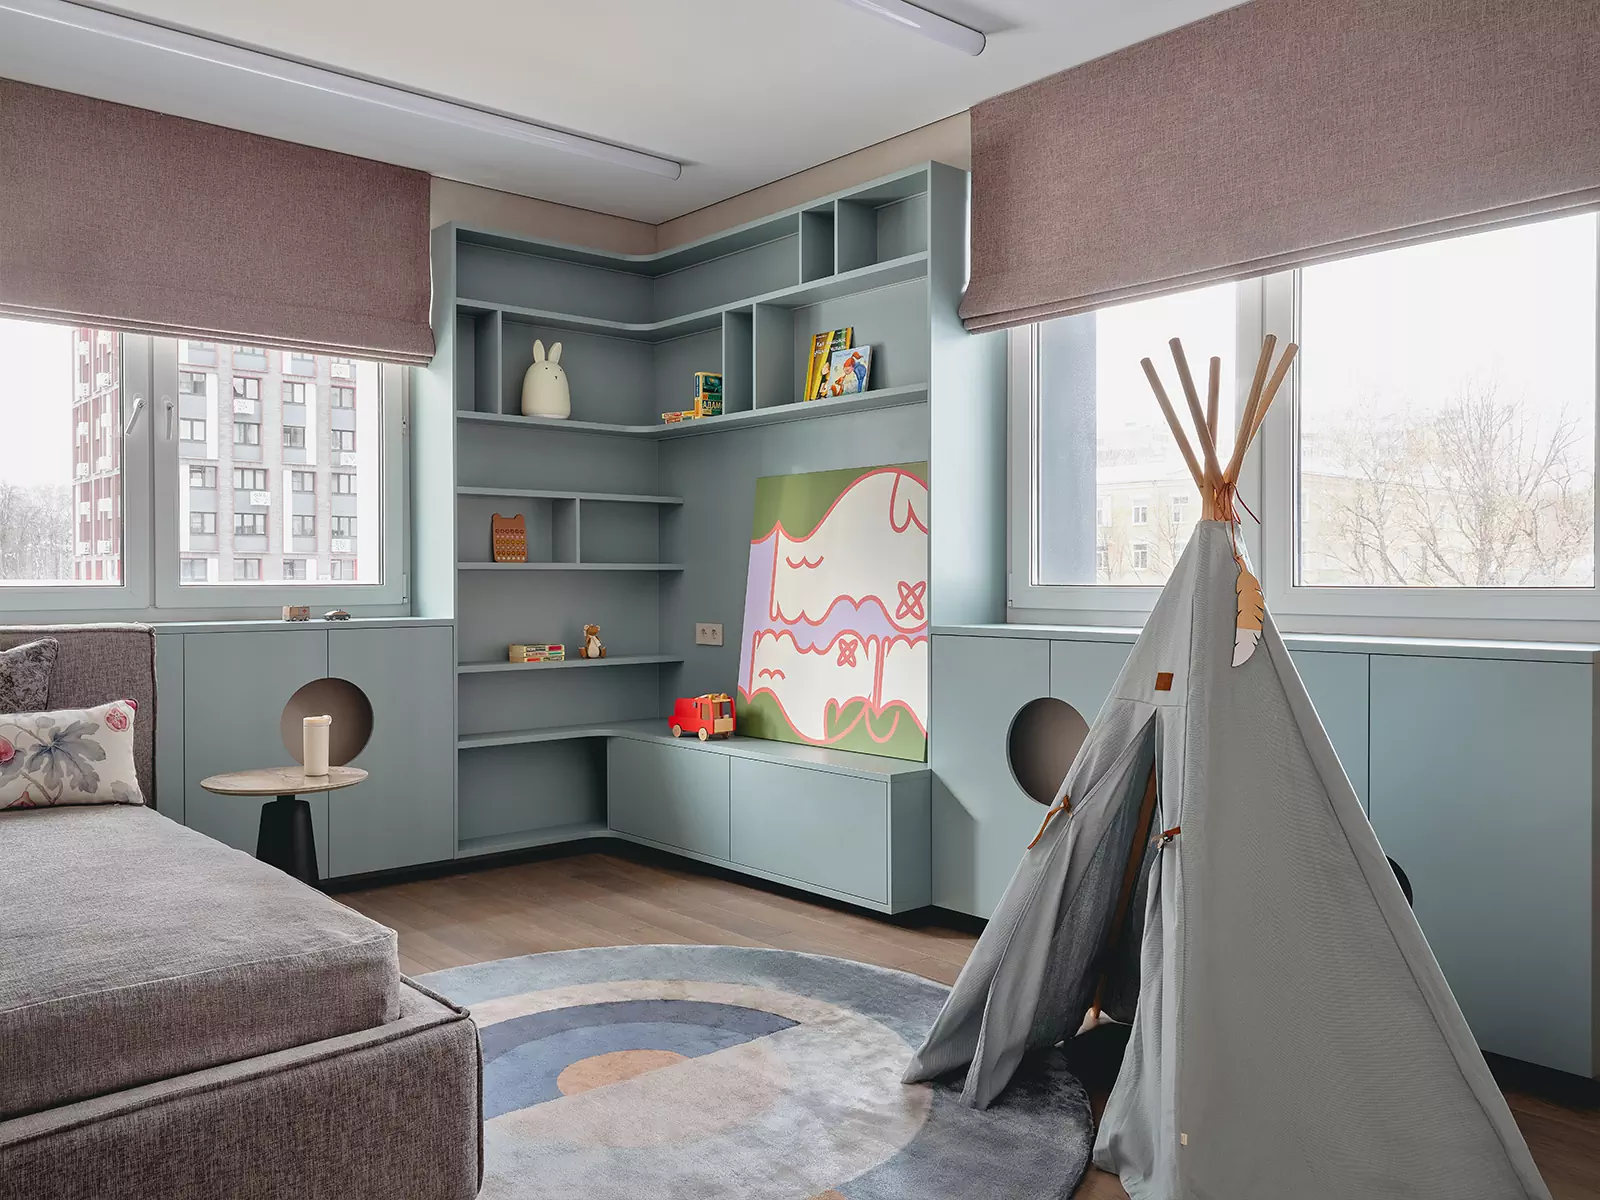 Komplexní odstíny a promyšlené světelné scénáře v interiéru bytu pro velkou rodinu - projekt Vitalyho Myasnikova